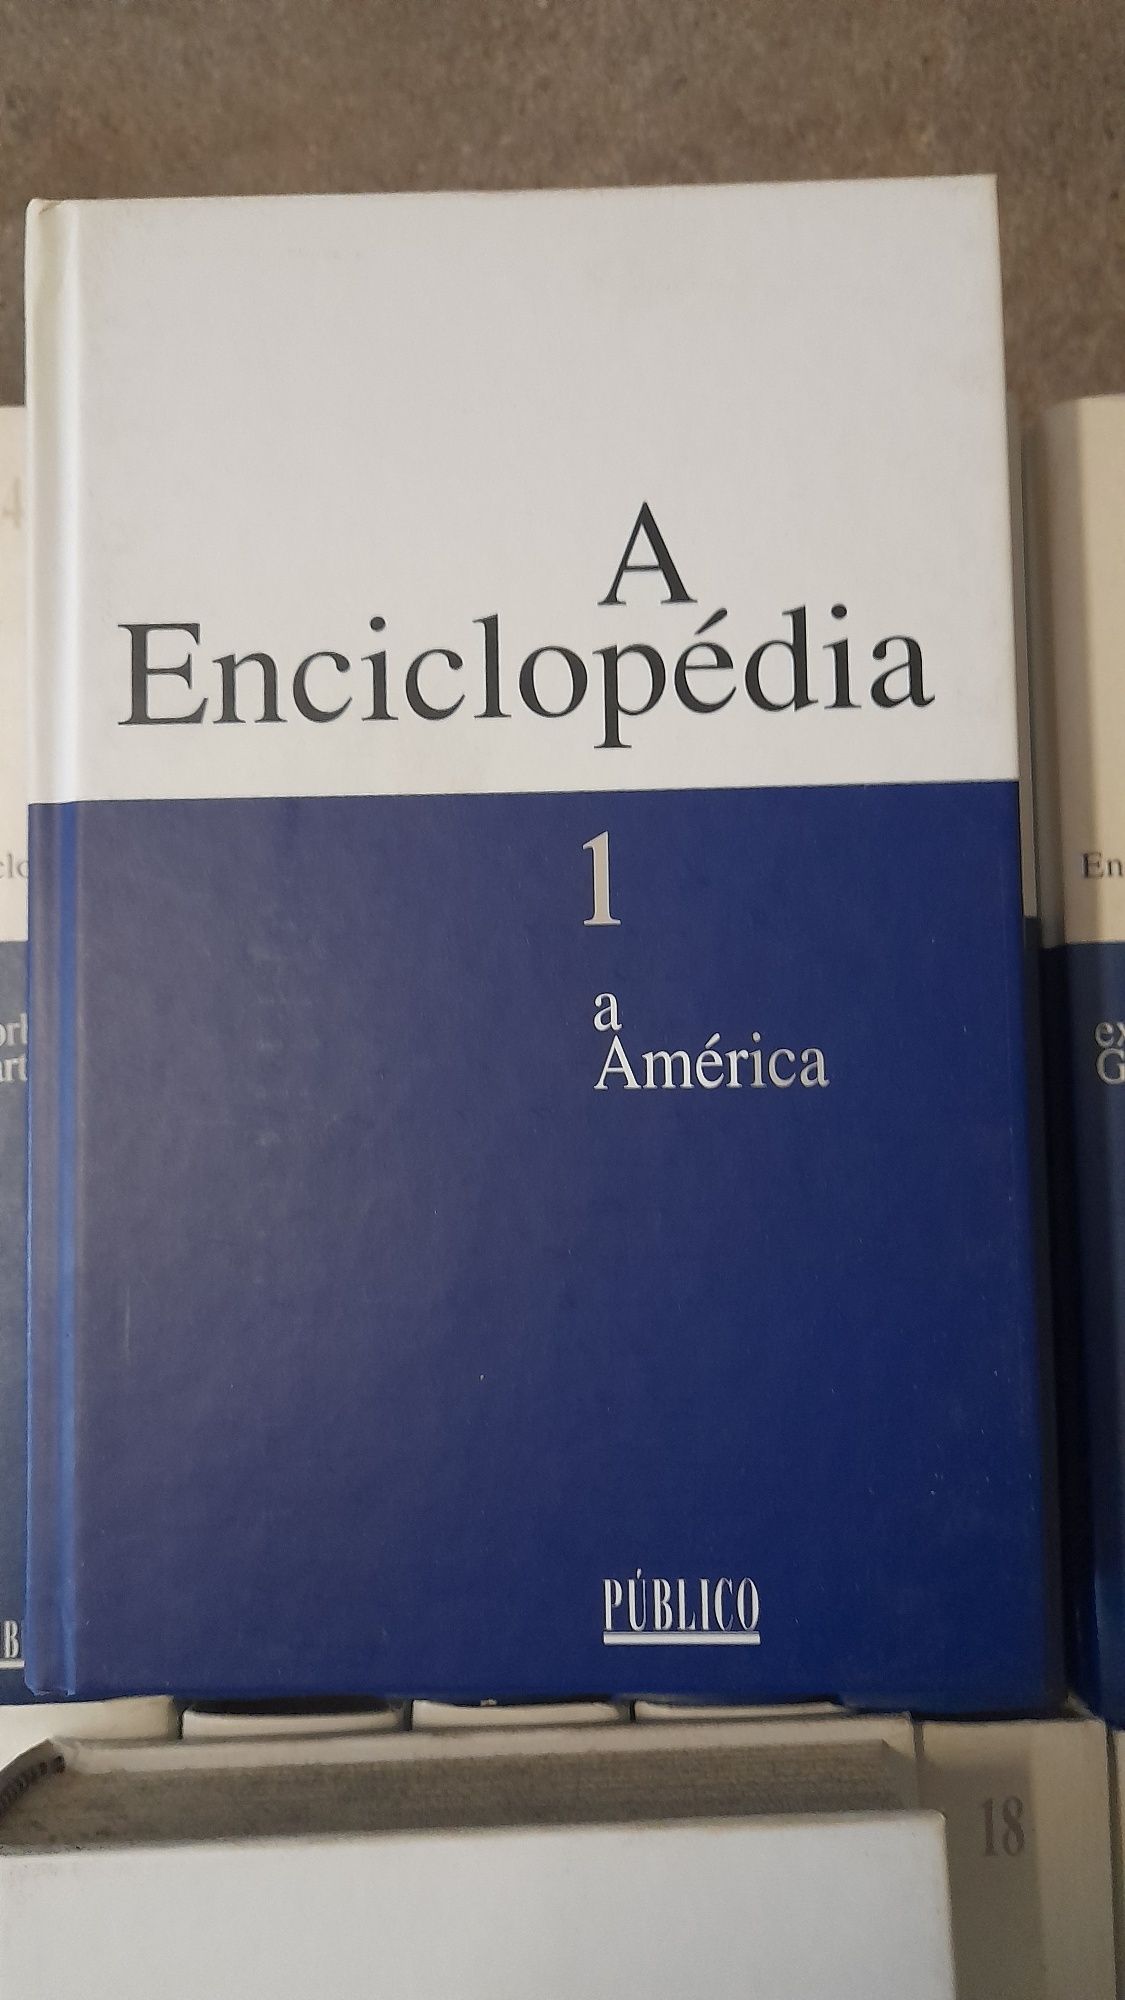 Vendo uma enciclopédia do jornal público